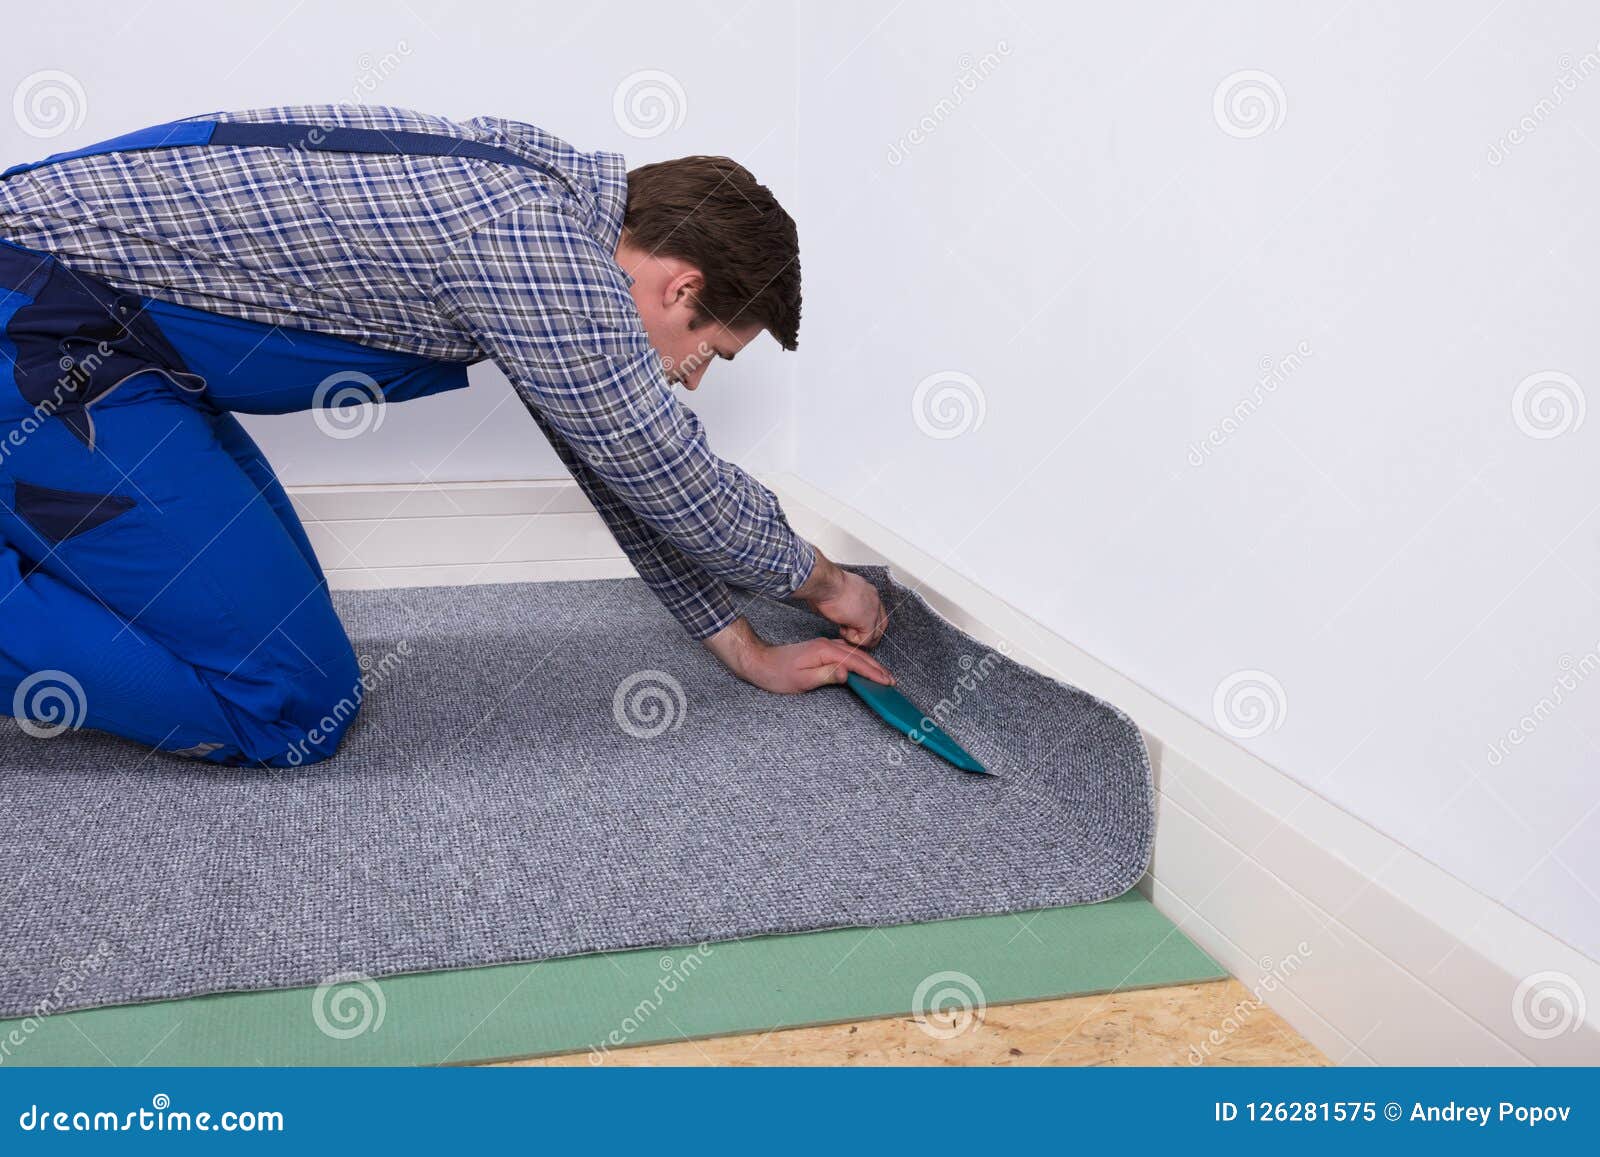 worker fitting carpet on floor